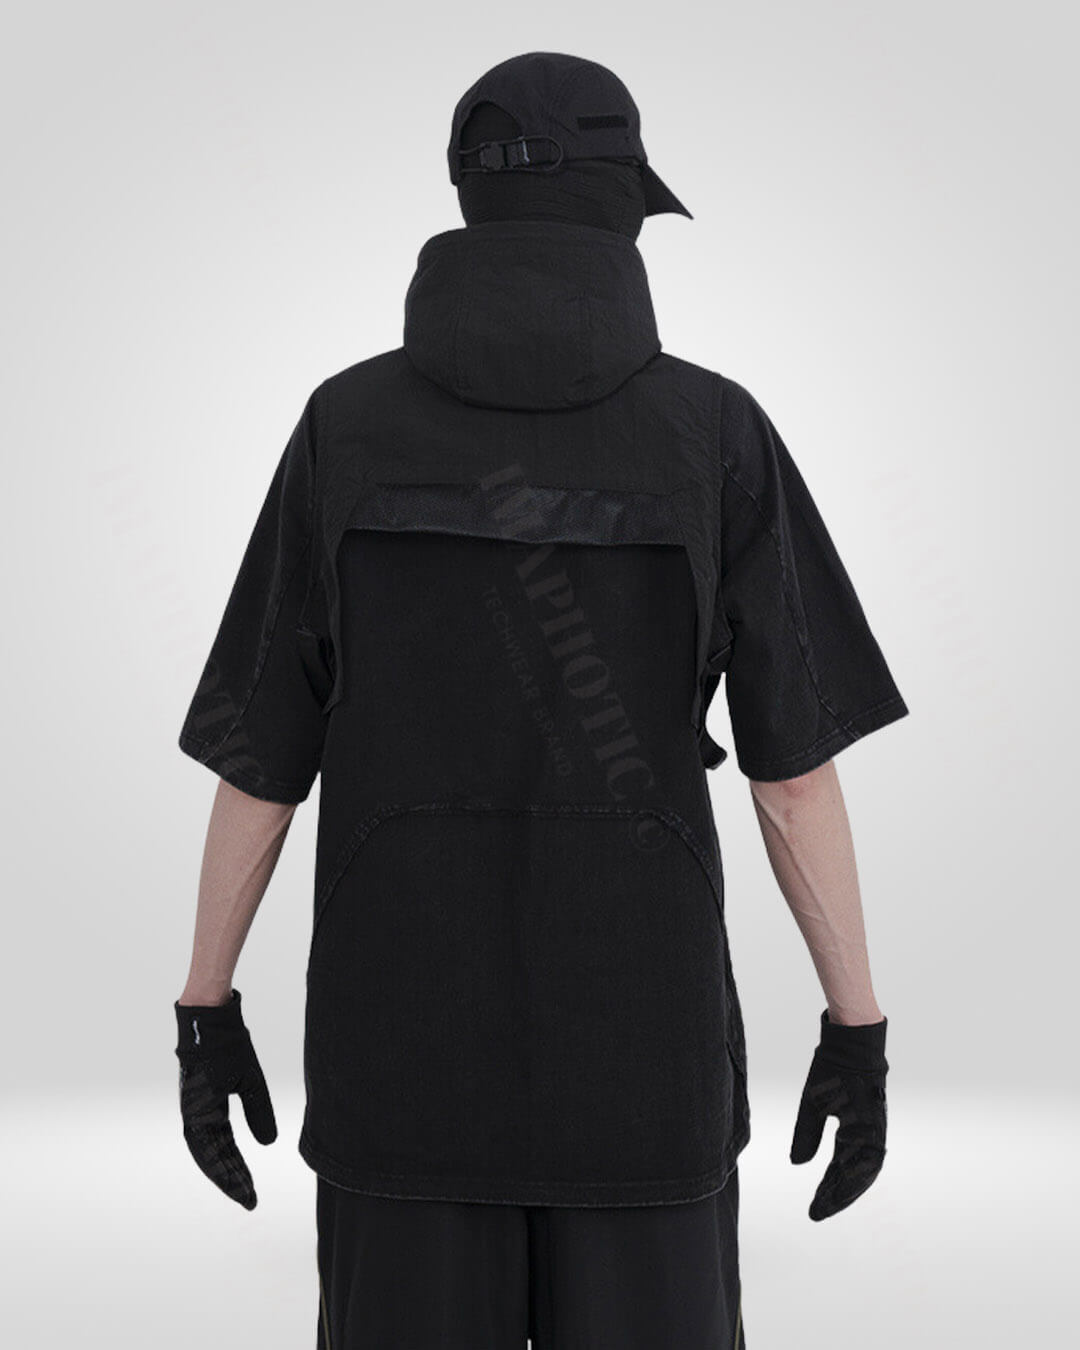 Ninja hooded vest